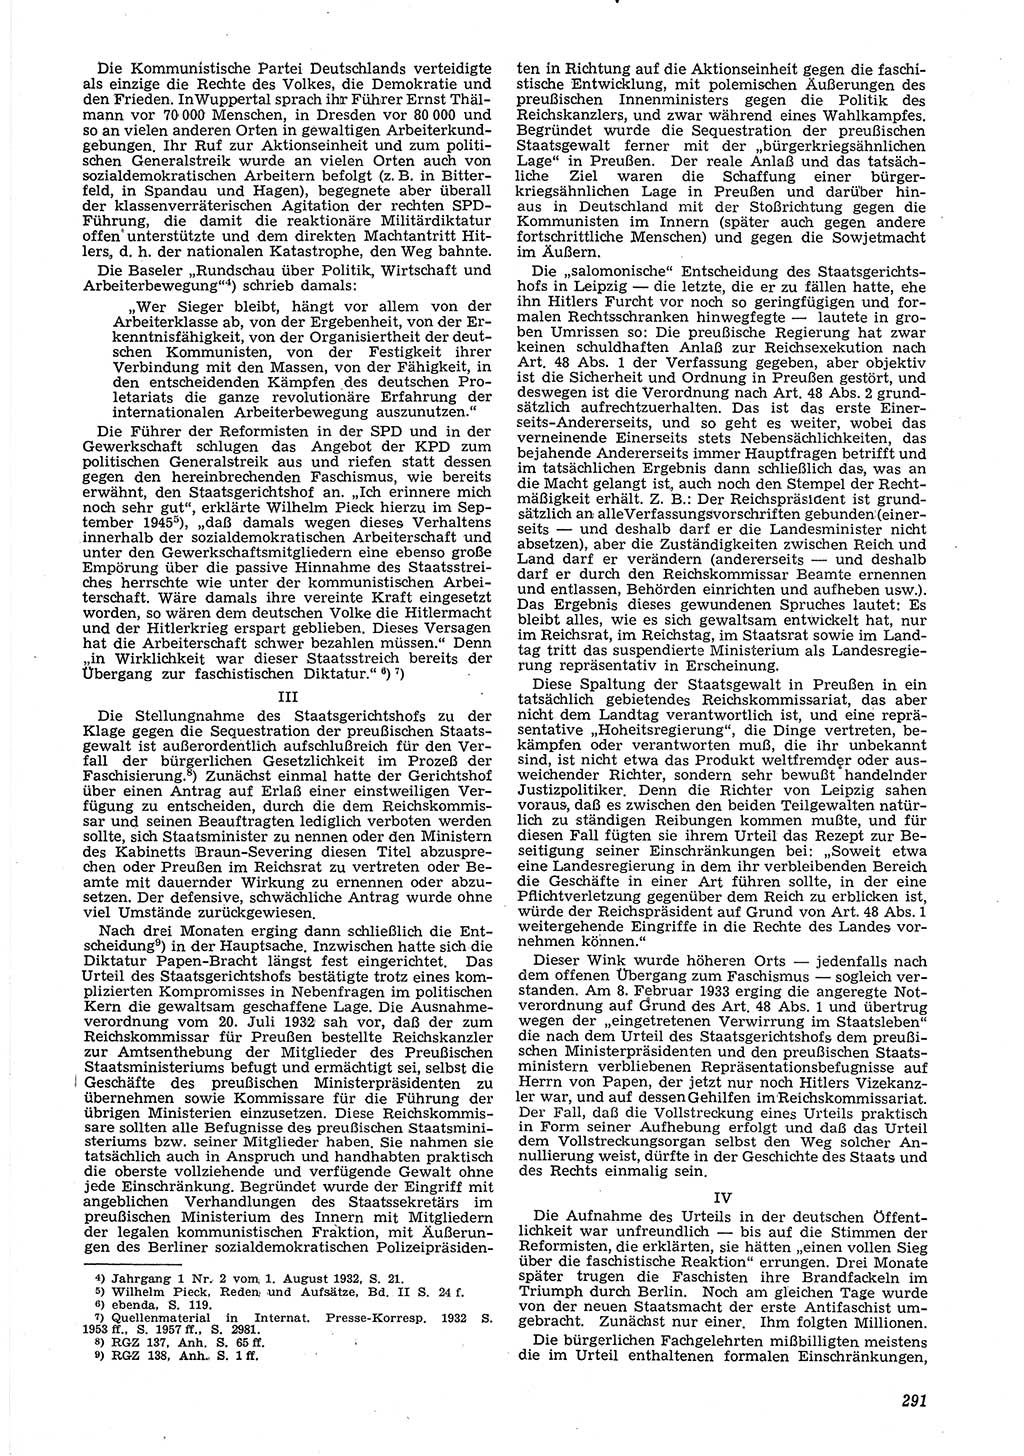 Neue Justiz (NJ), Zeitschrift für Recht und Rechtswissenschaft [Deutsche Demokratische Republik (DDR)], 6. Jahrgang 1952, Seite 291 (NJ DDR 1952, S. 291)